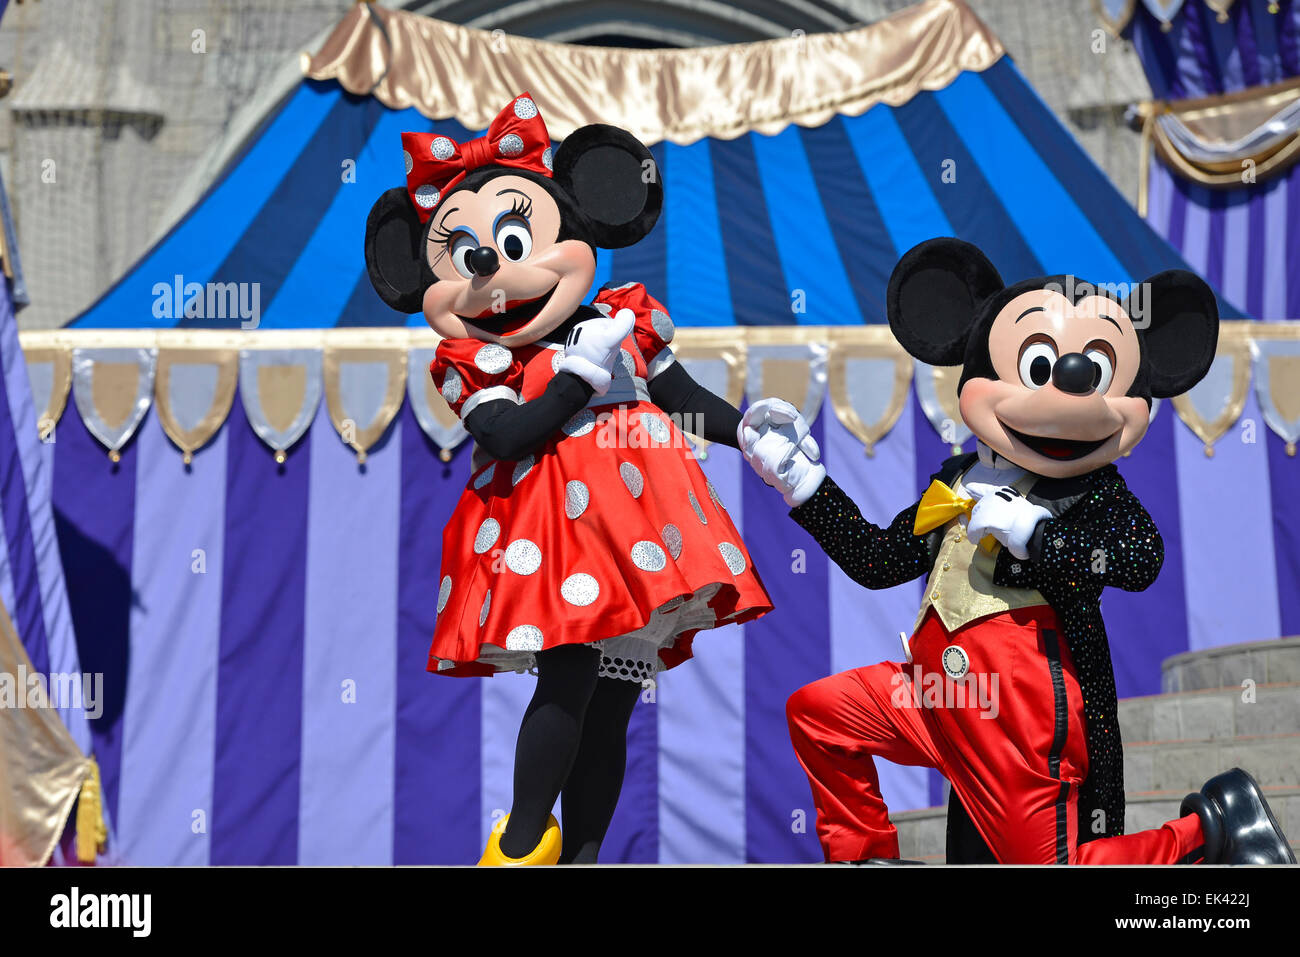 Mickey et Minnie Mouse, personnages de Disney, Disney World, Magic Kingdom, Orlando en Floride Banque D'Images